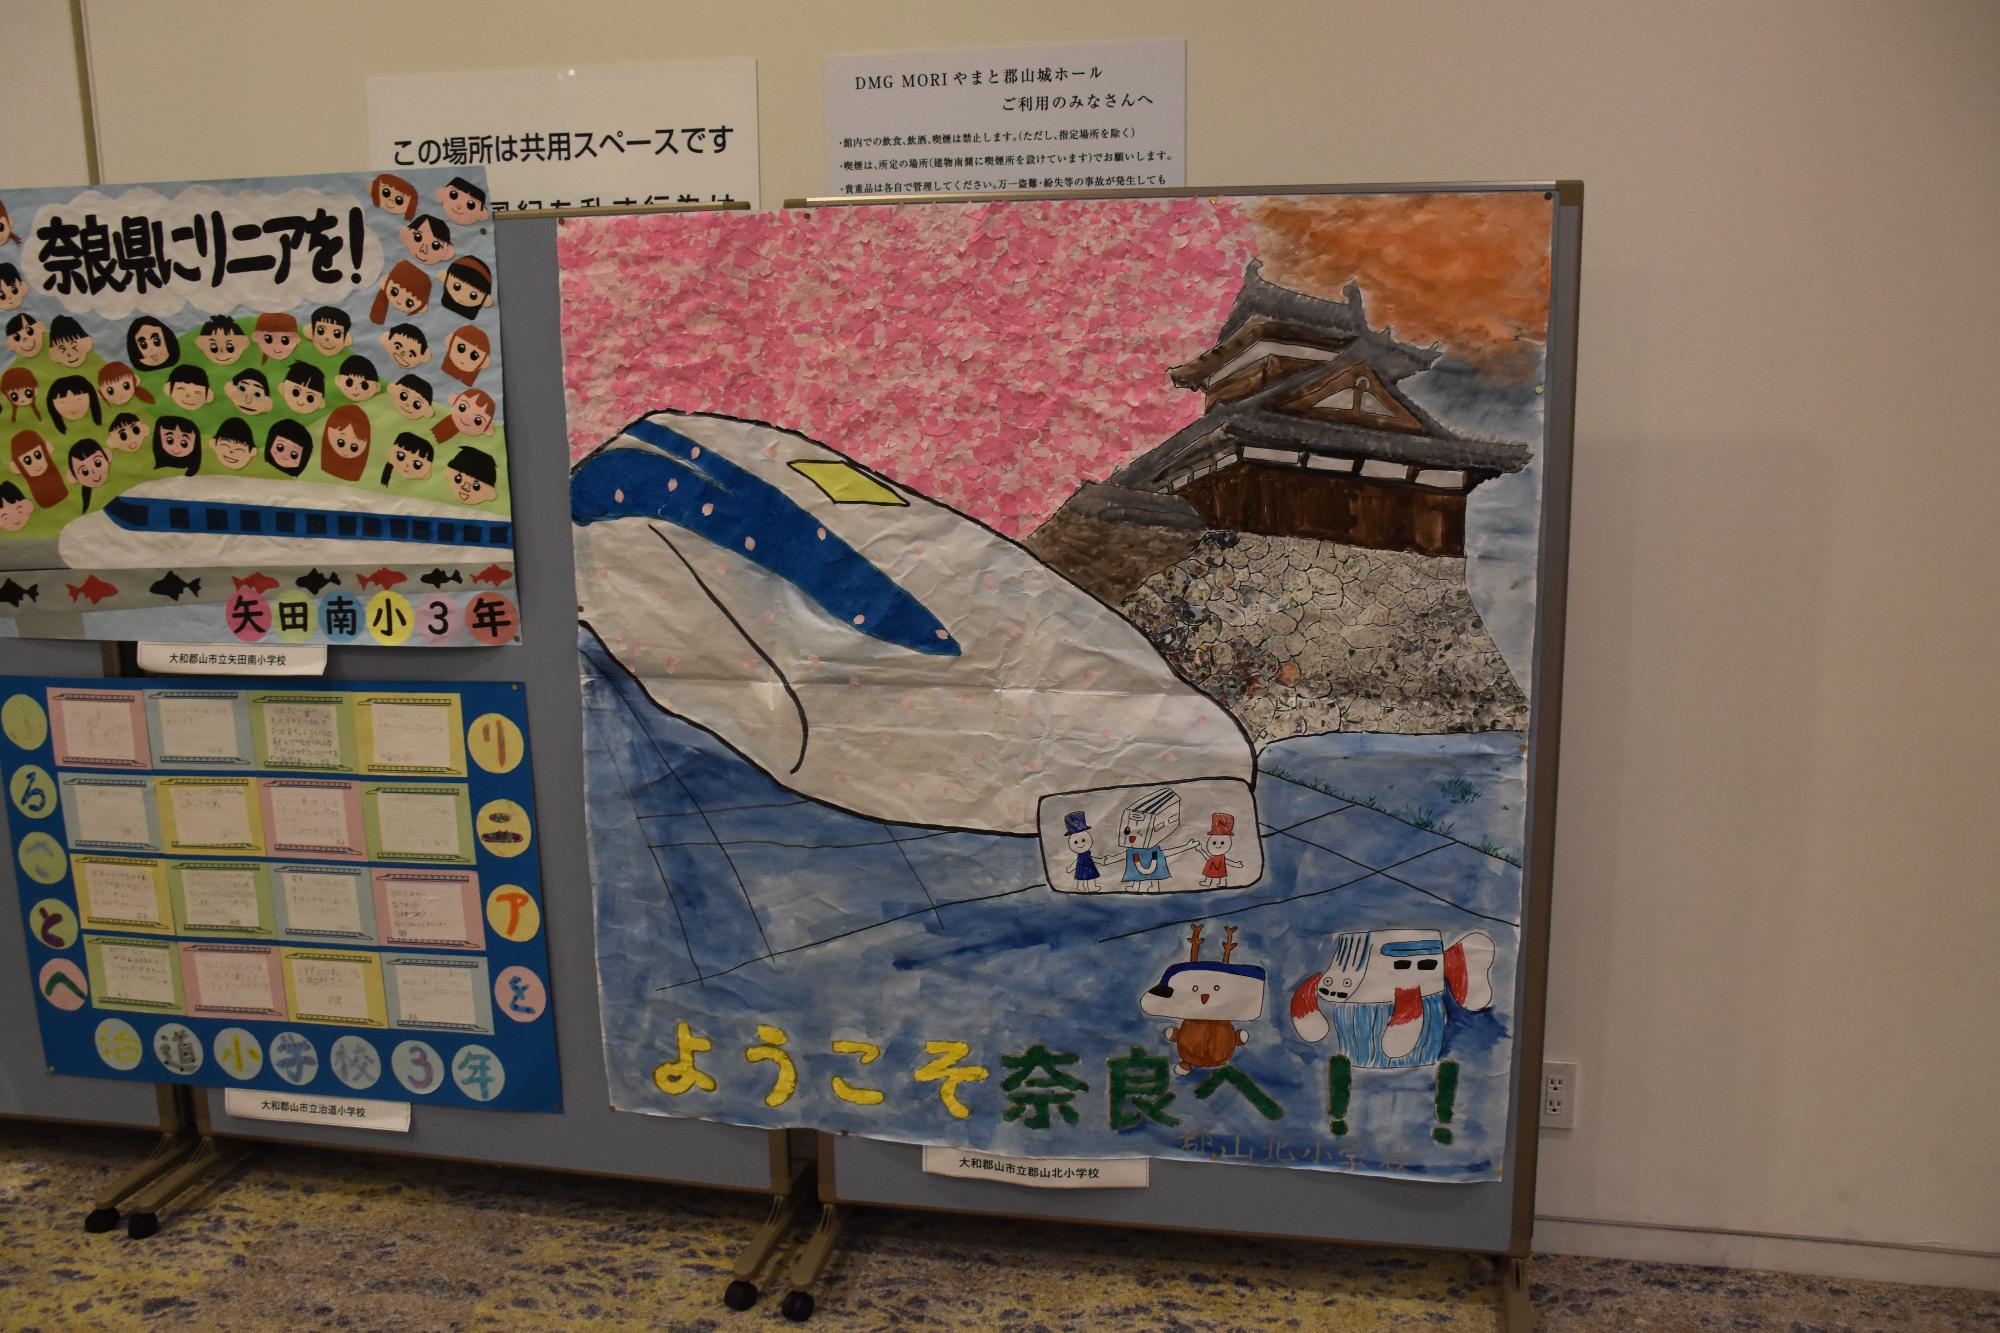 奈良県にリニアをの会で展示された絵